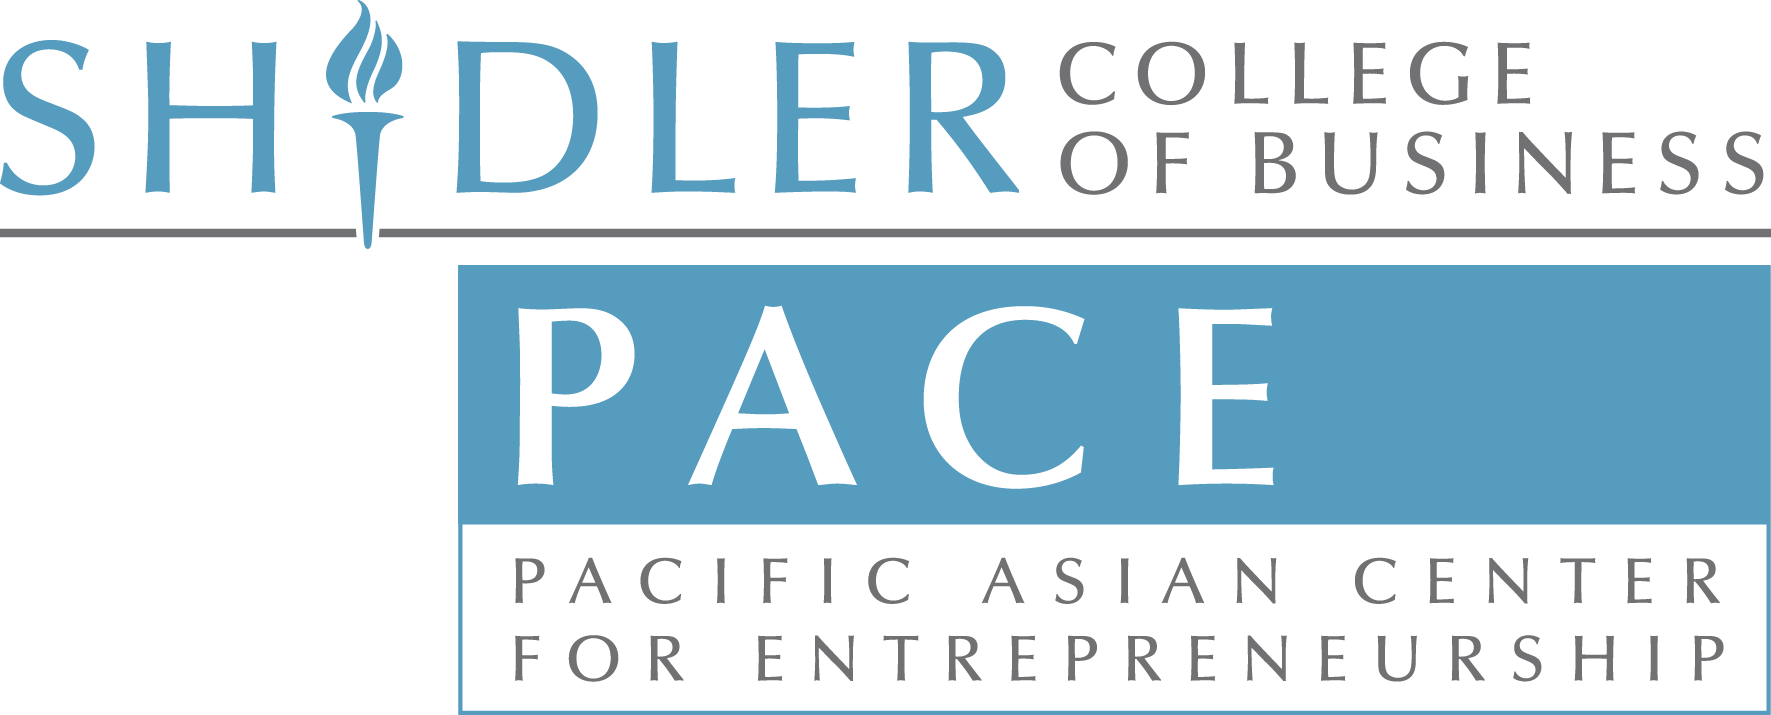 https://eastmeetswest.co/sponsor/pacific-asian-ce…entrepreneurship/